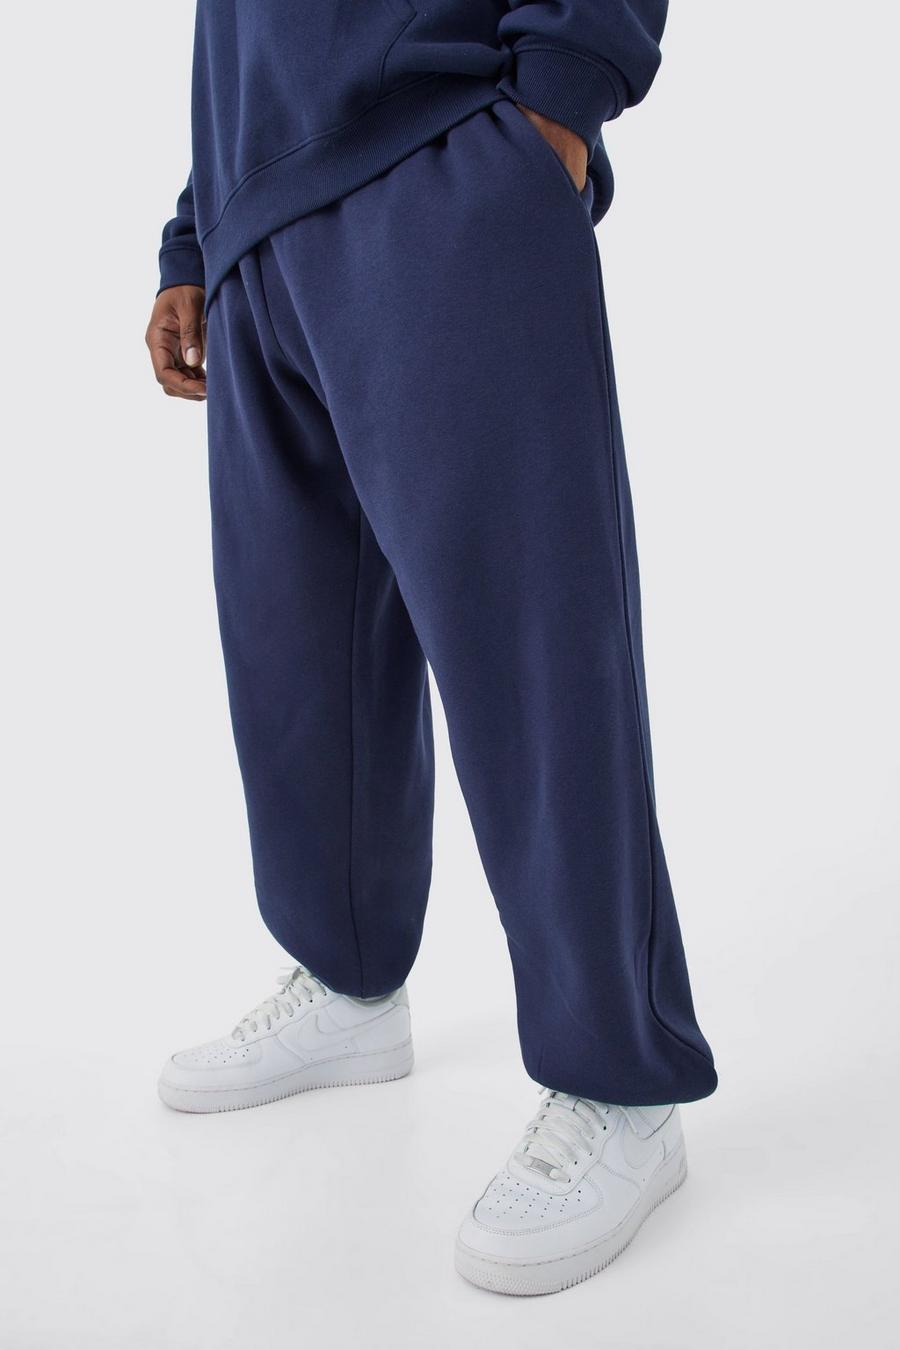 Pantaloni tuta Plus Size oversize Basic, Navy image number 1